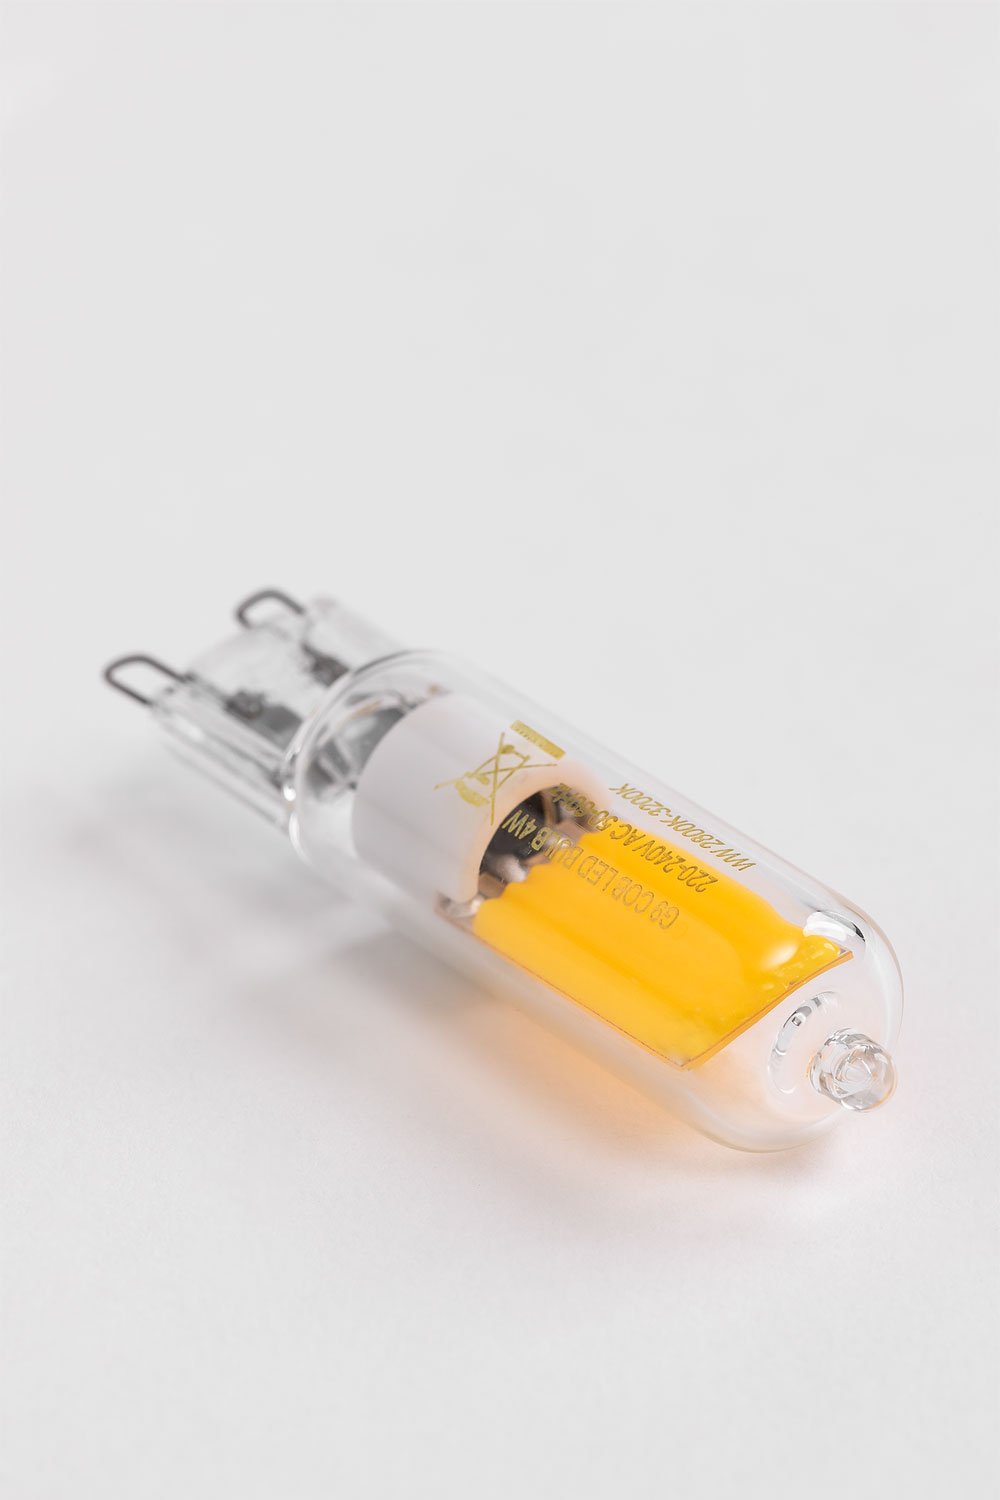 Ampoule LED G9 - 4W